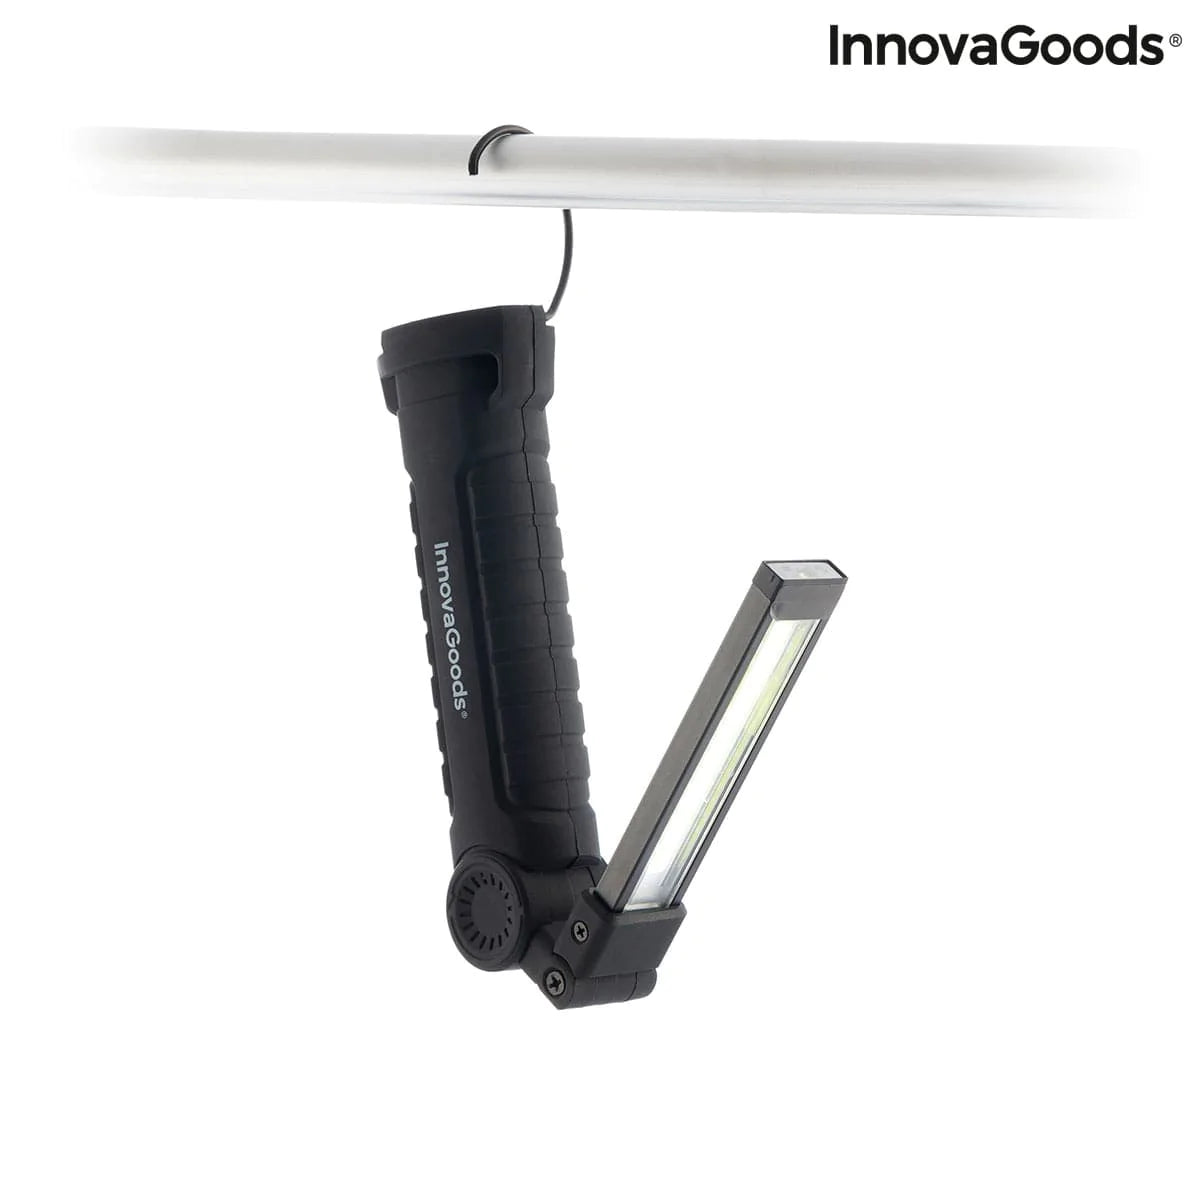 InnovaGoods Heim | Garten > Heimwerkerbedarf und Eisenwaren 5-in-1 wiederaufladbare magnetische LED-Taschenlampe Litooler InnovaGoods